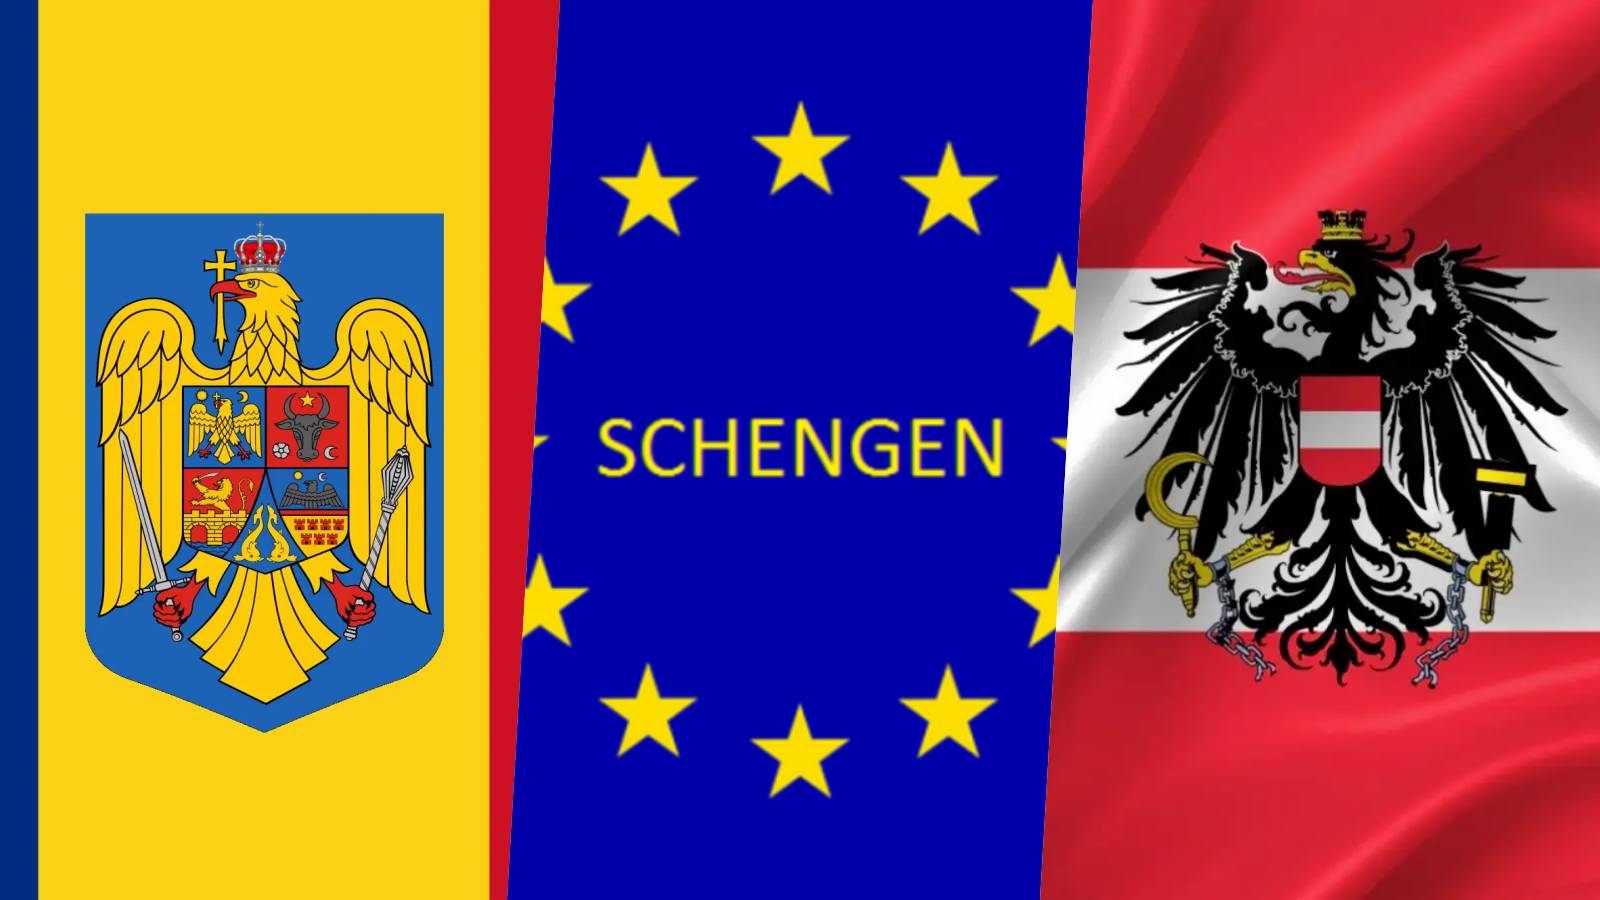 Oficjalne środki Austrii W OSTATNIEJ CHWILI Karl Nehammer zwiększa presję w związku z przystąpieniem Rumunii do strefy Schengen